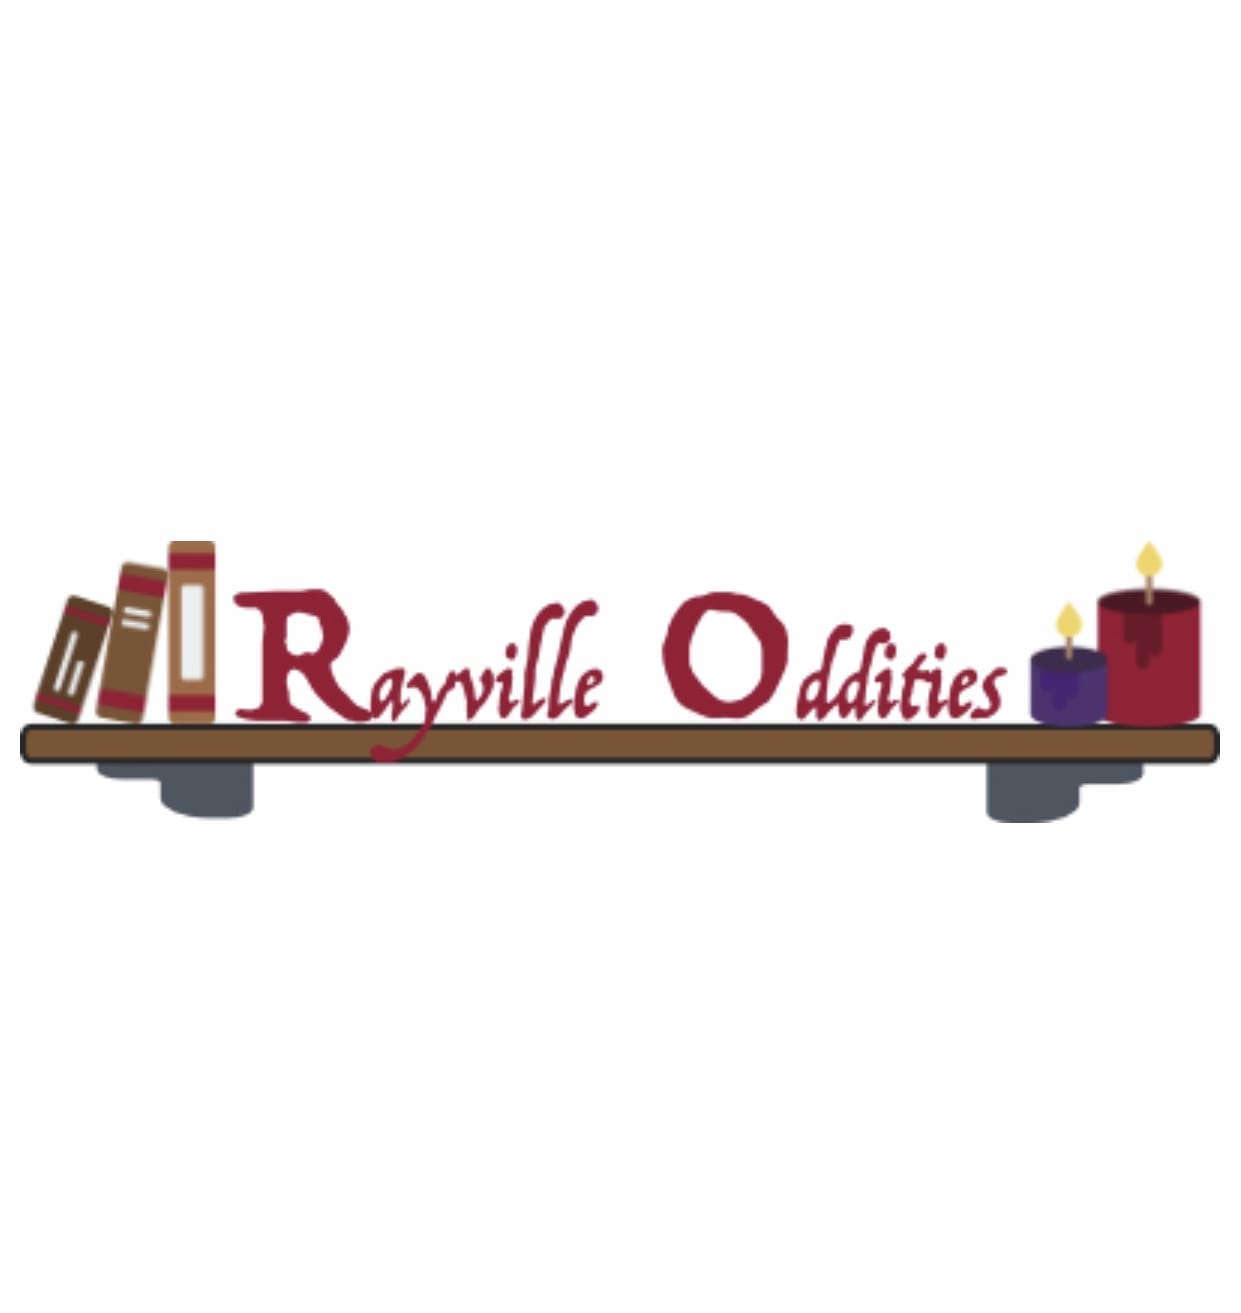 Rayville Oddities